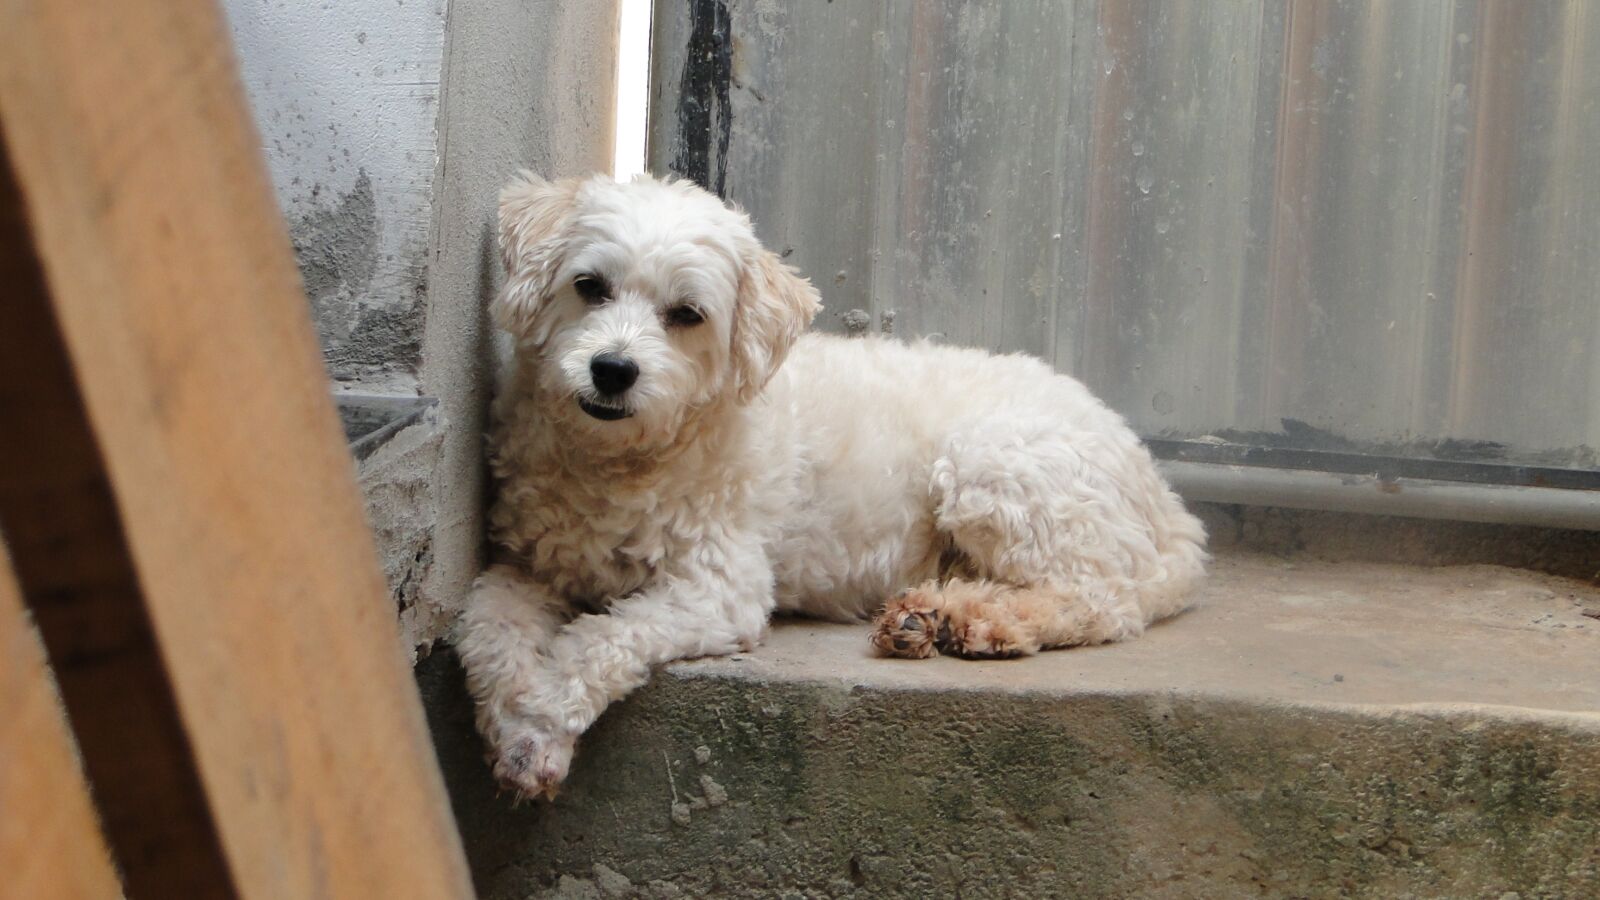 Sony Cyber-shot DSC-HX1 sample photo. Dog, poodle, animal photography